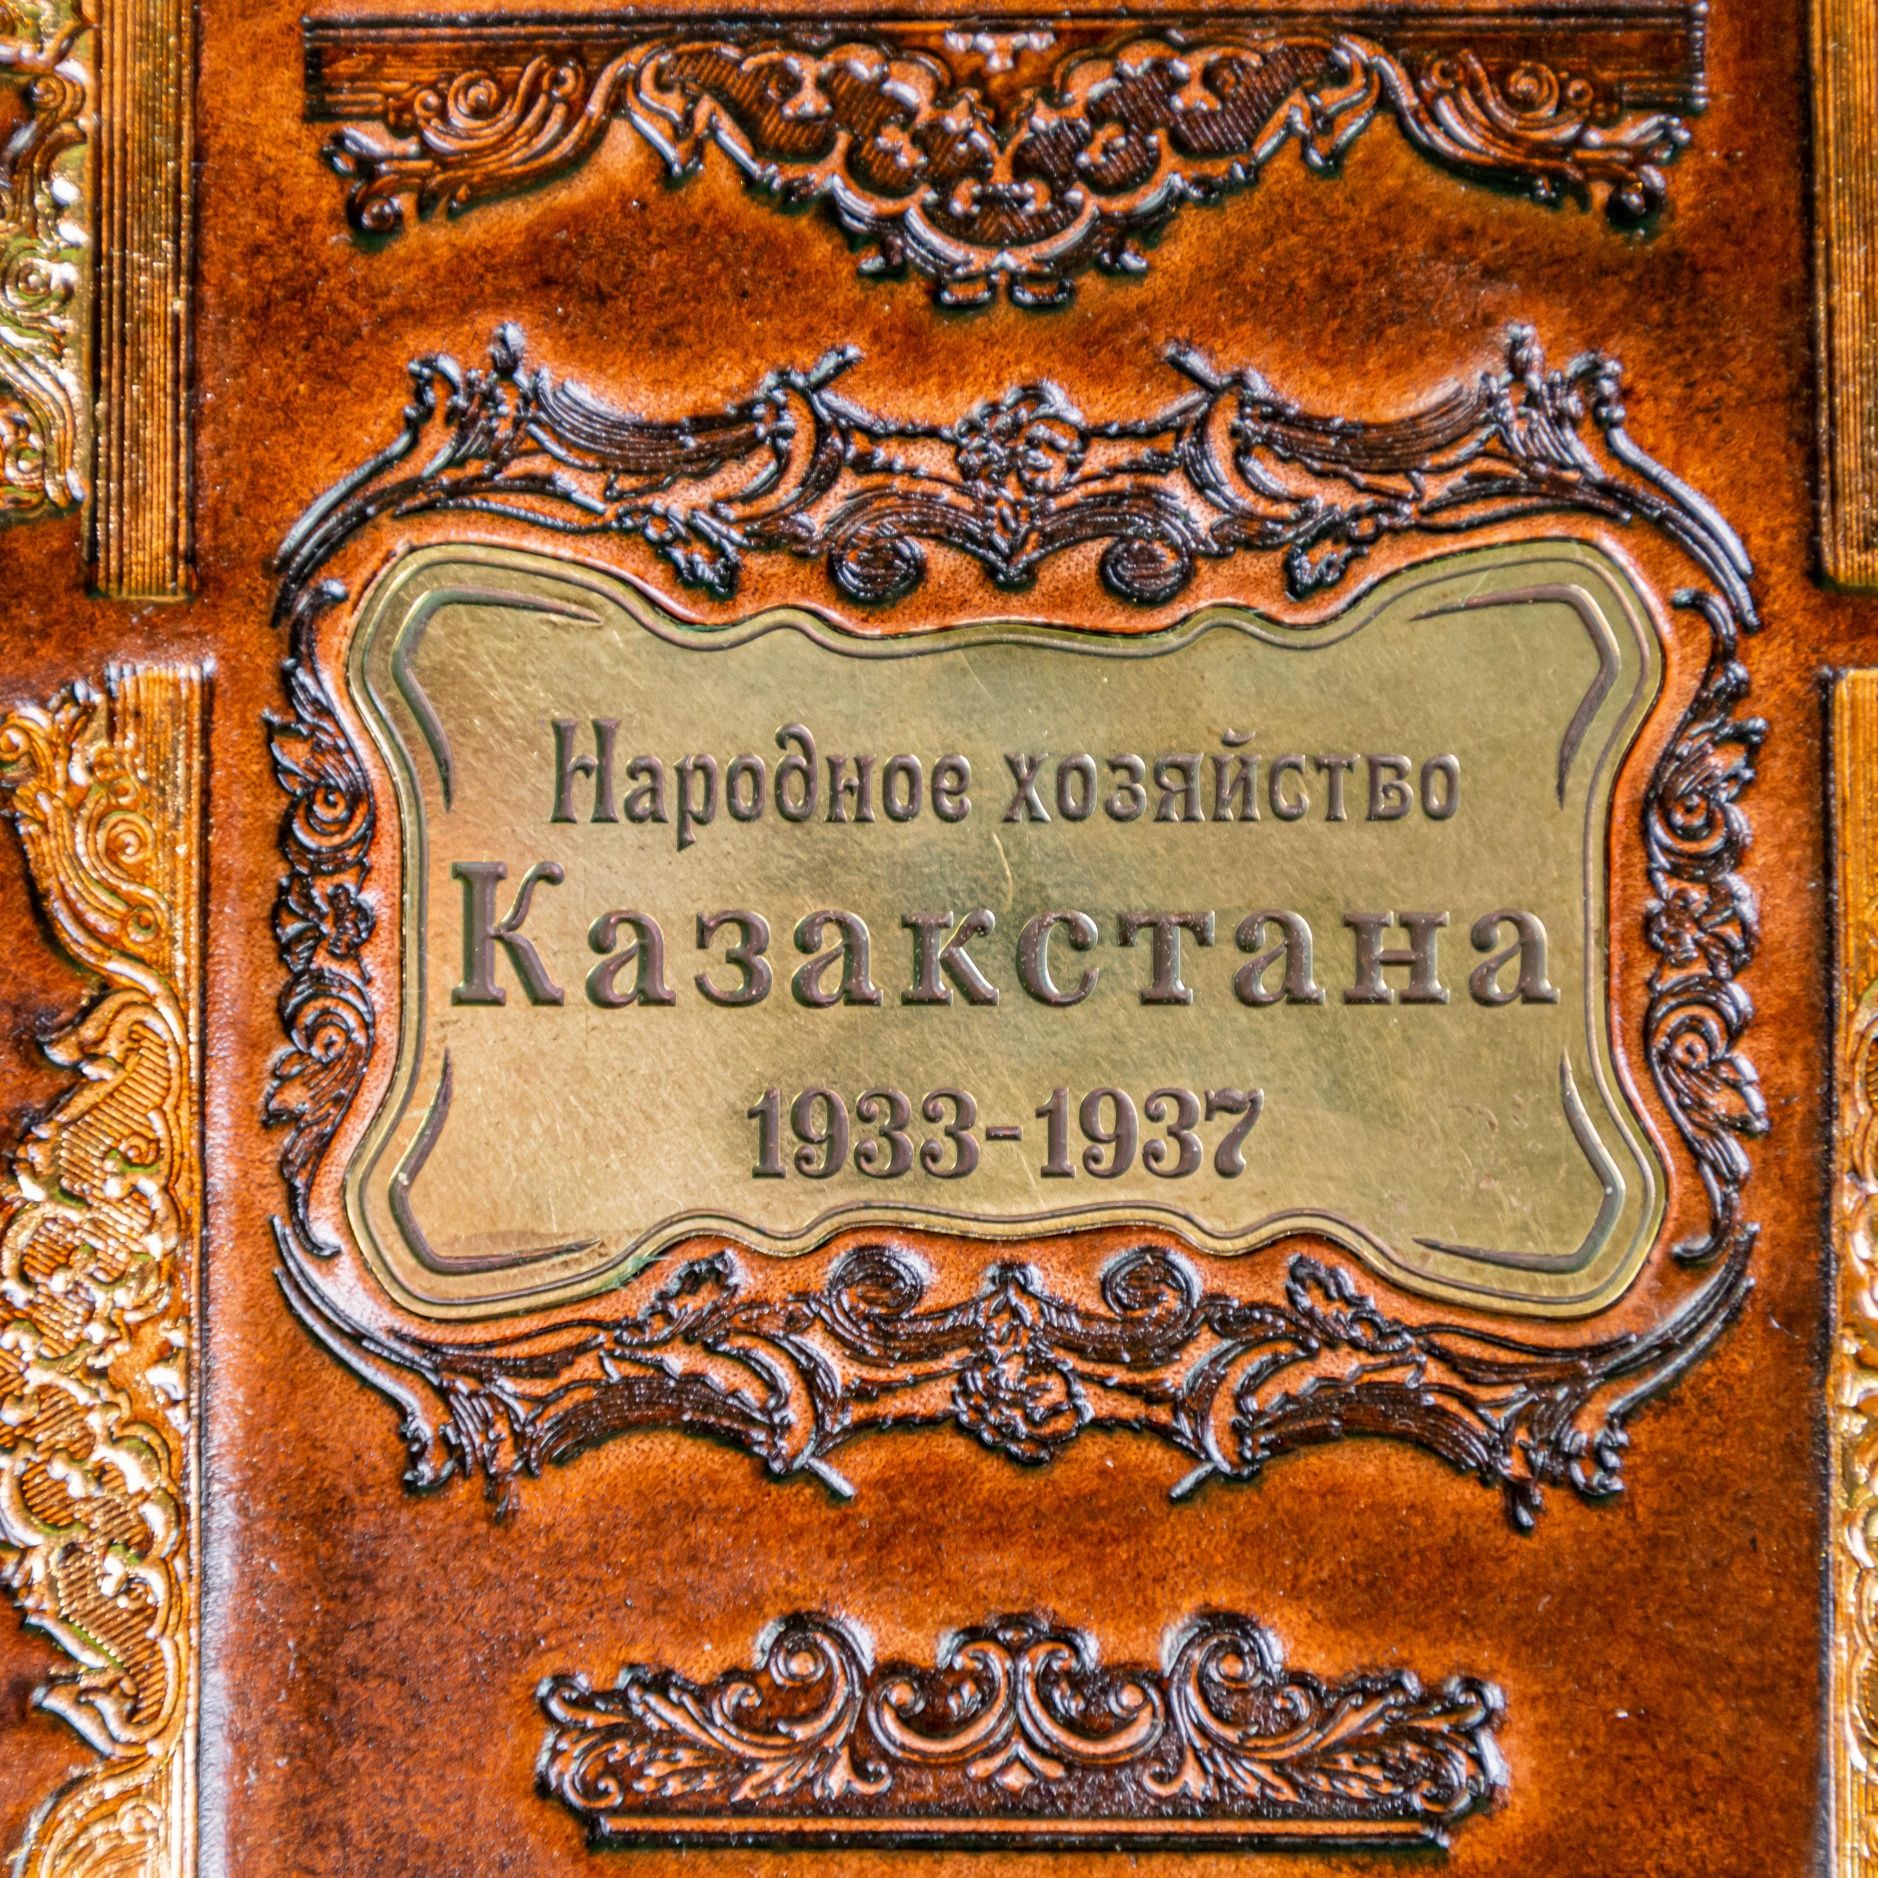 «Народное хозяйство Казахстана 1932г-1937г..»

«Народное хозяйство